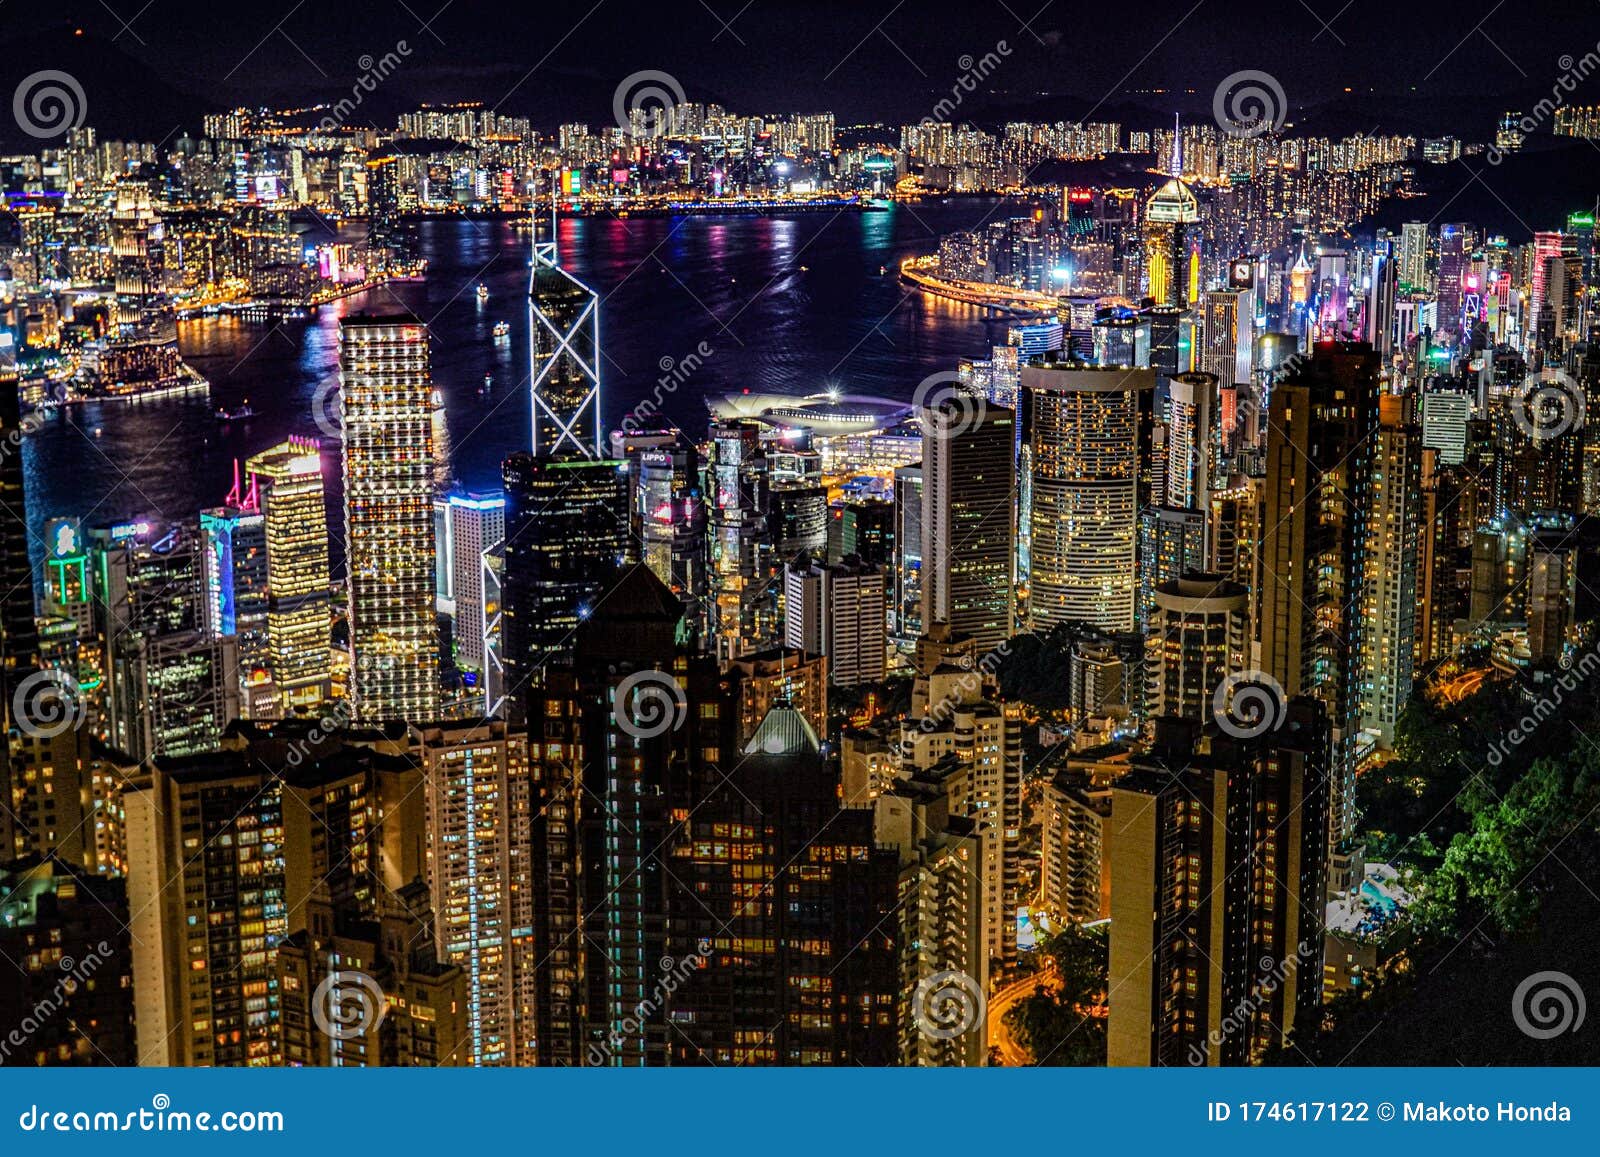 从维多利亚峰看香港夜景图库摄影片 图片包括有上升 设施 商业 九龙 照明 国外 区域